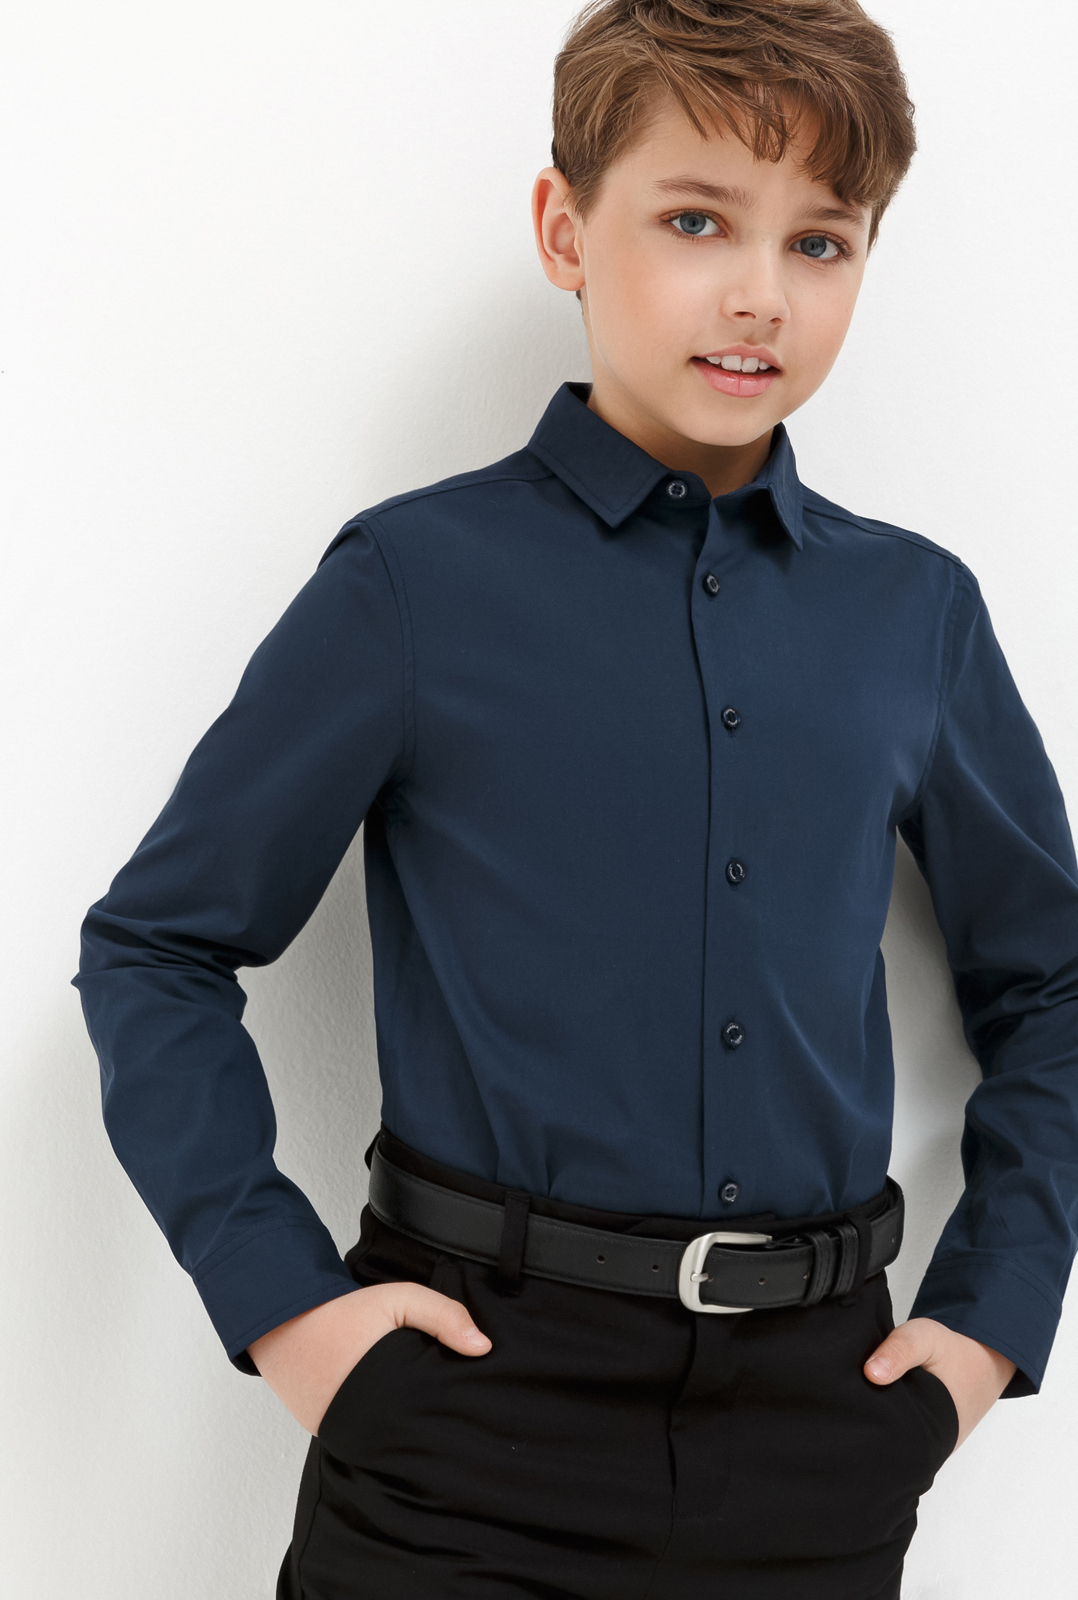 Рубашка для мальчика Acoola Houston, цвет: темно-голубой. 20140280033_600. Размер 122